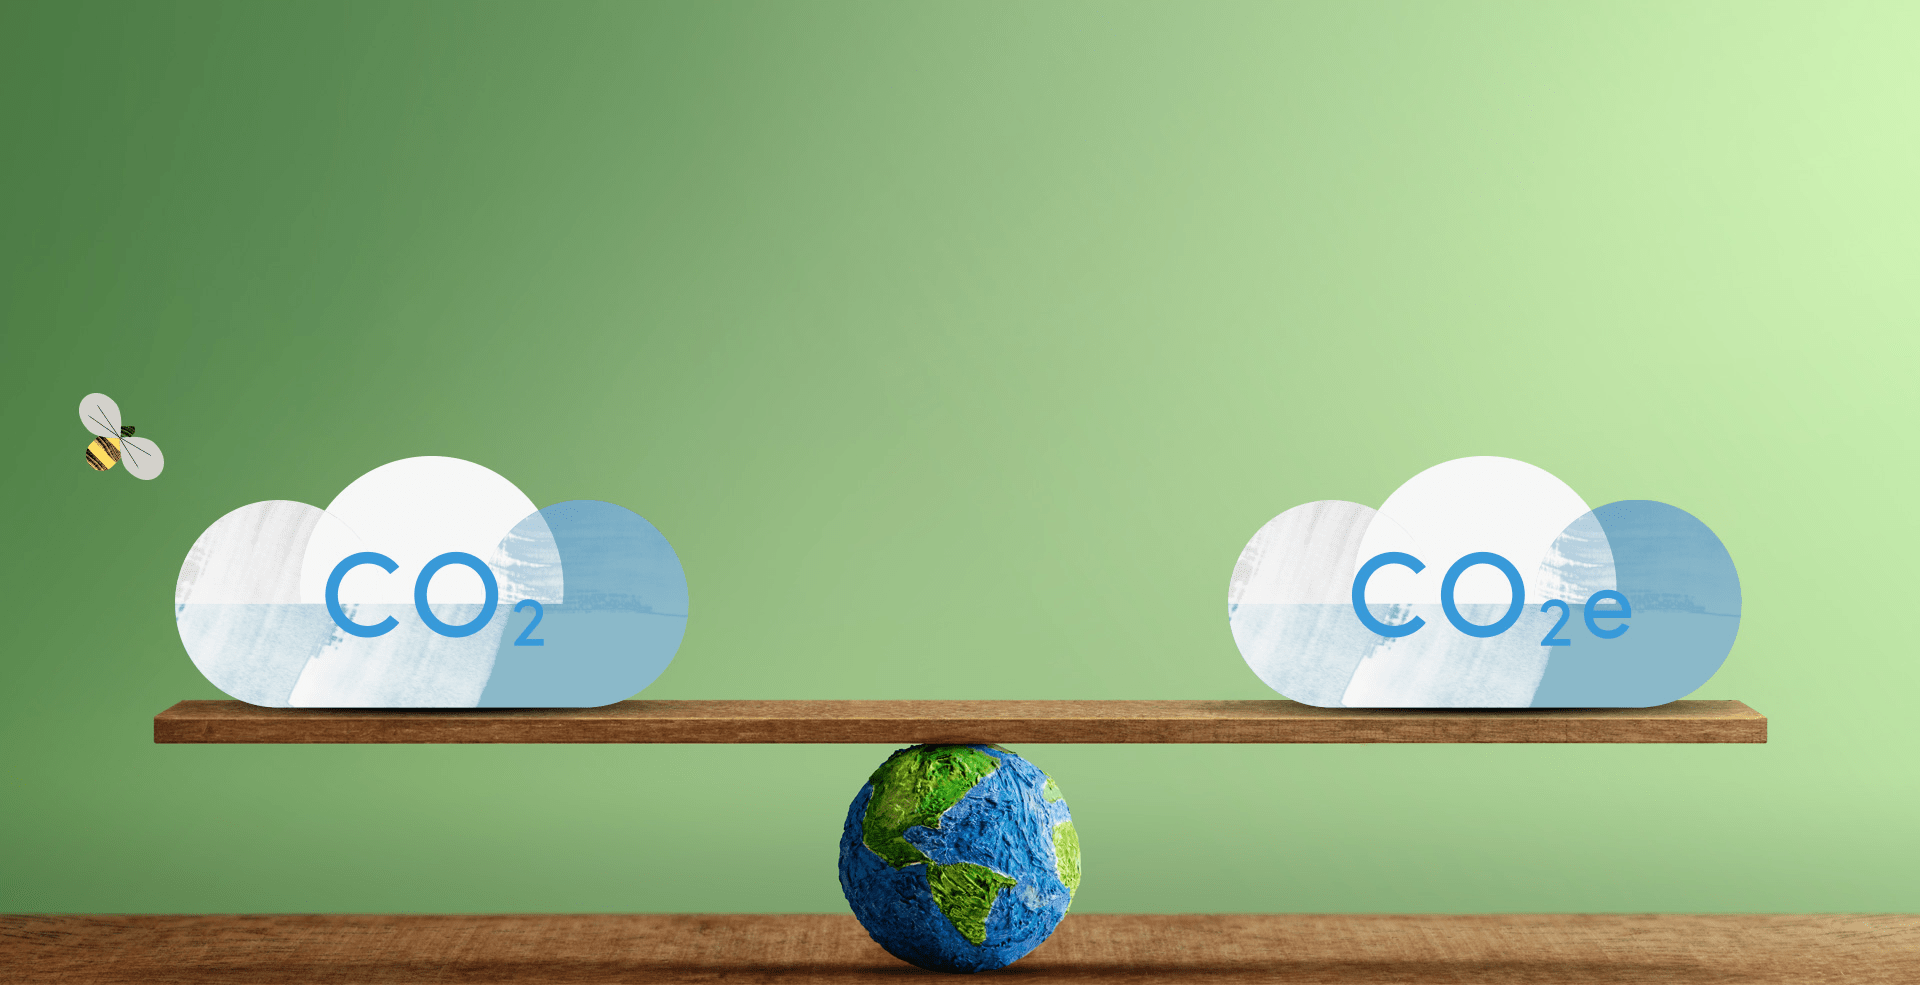 Đối với hoạt động kiểm kê khí nhà kính, doanh nghiệp cần báo cáo chỉ số CO2e